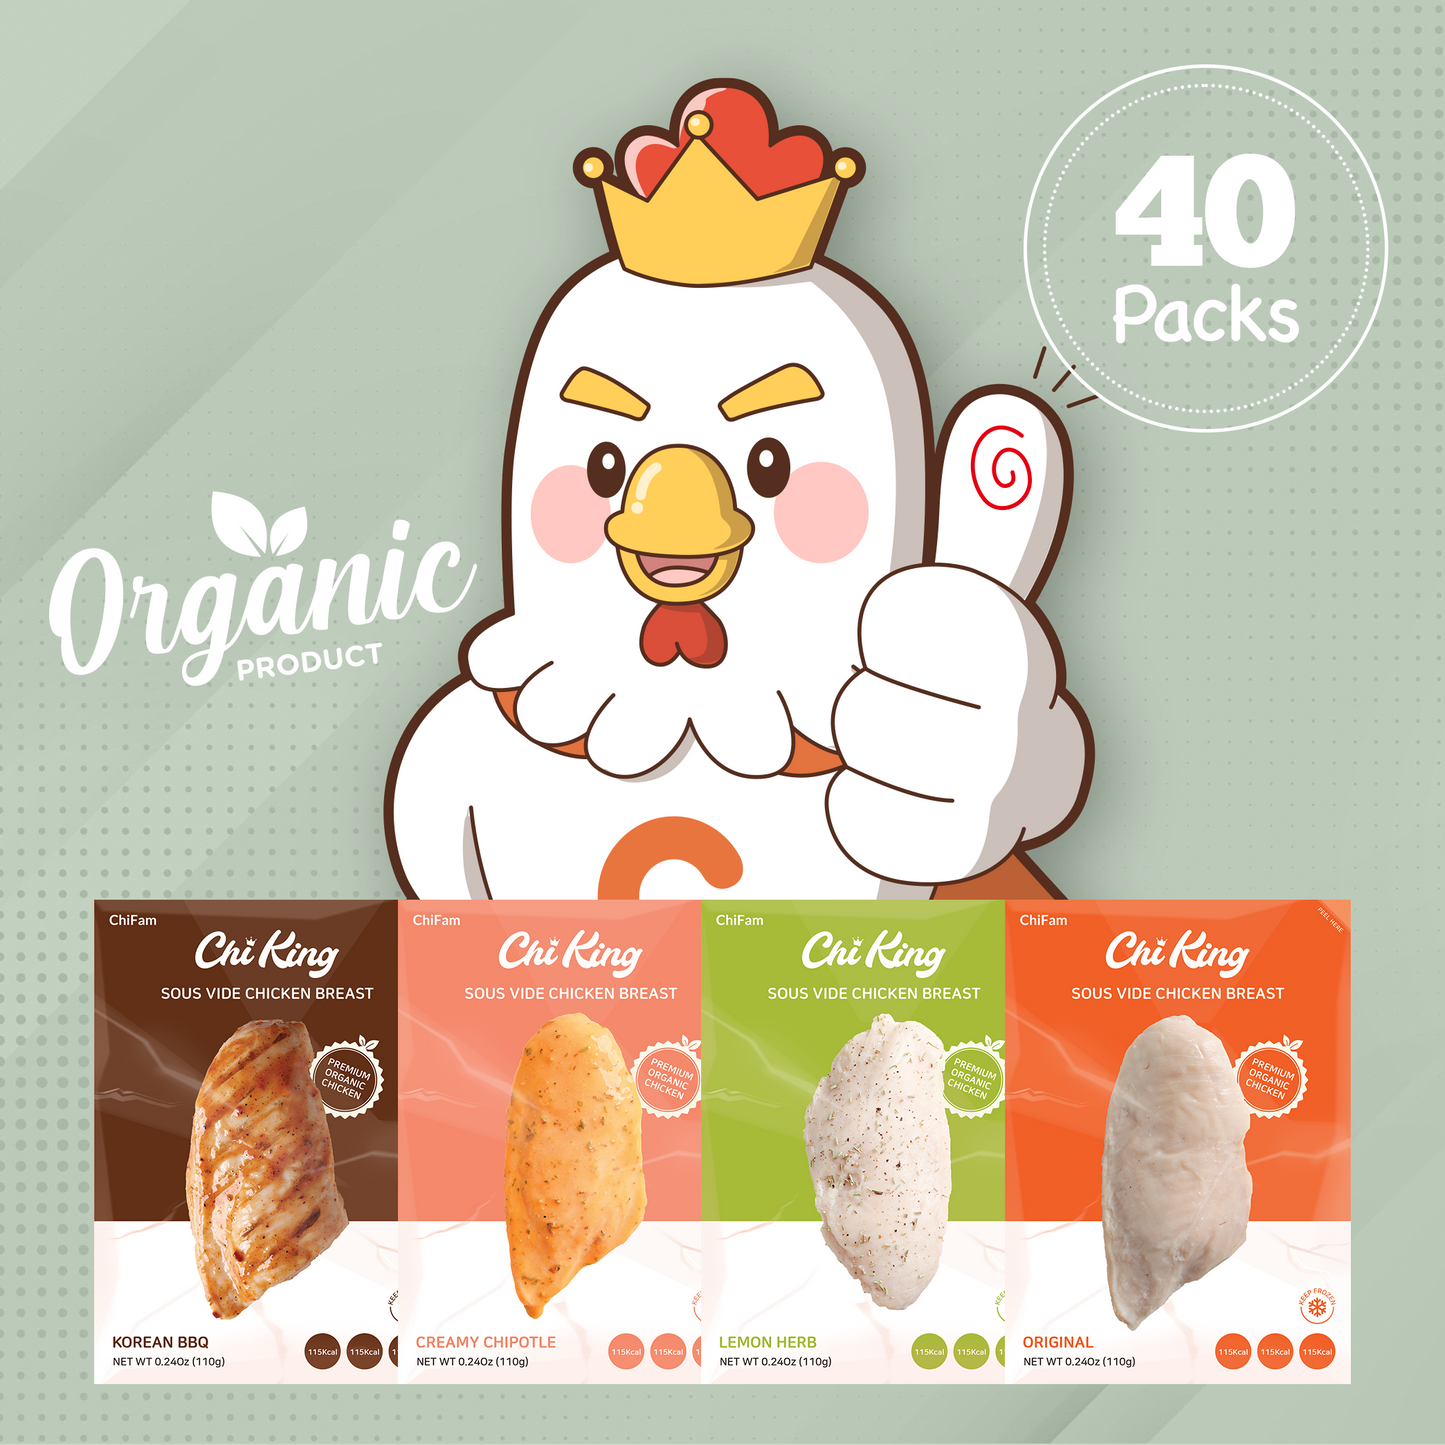 Organic 40 Pack Box